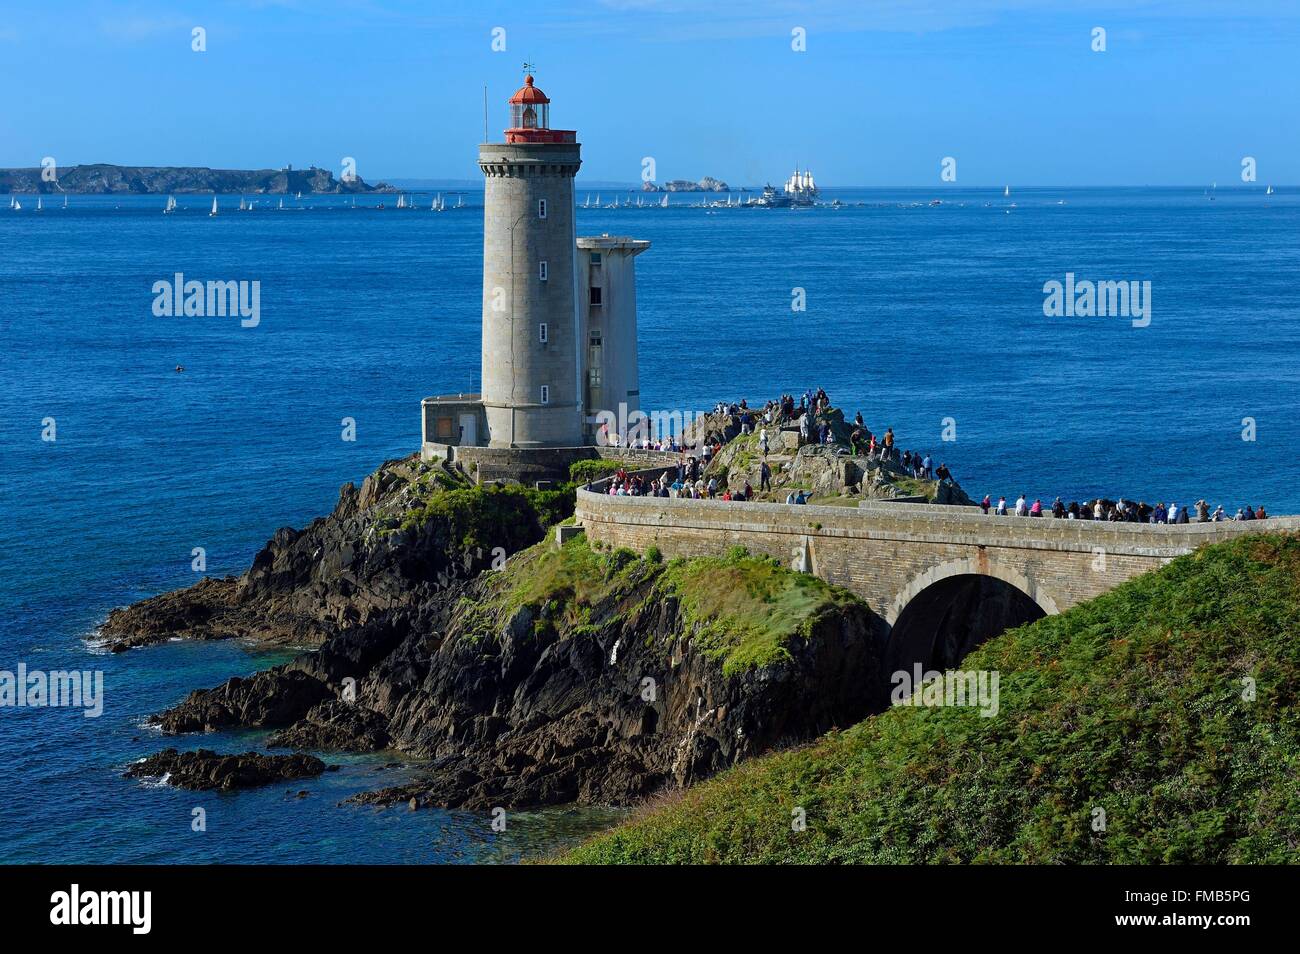 La France, Finistère, rade de Brest (rade de Brest), petit minou phare, frégate de l'Hermione, réplique du départ Banque D'Images